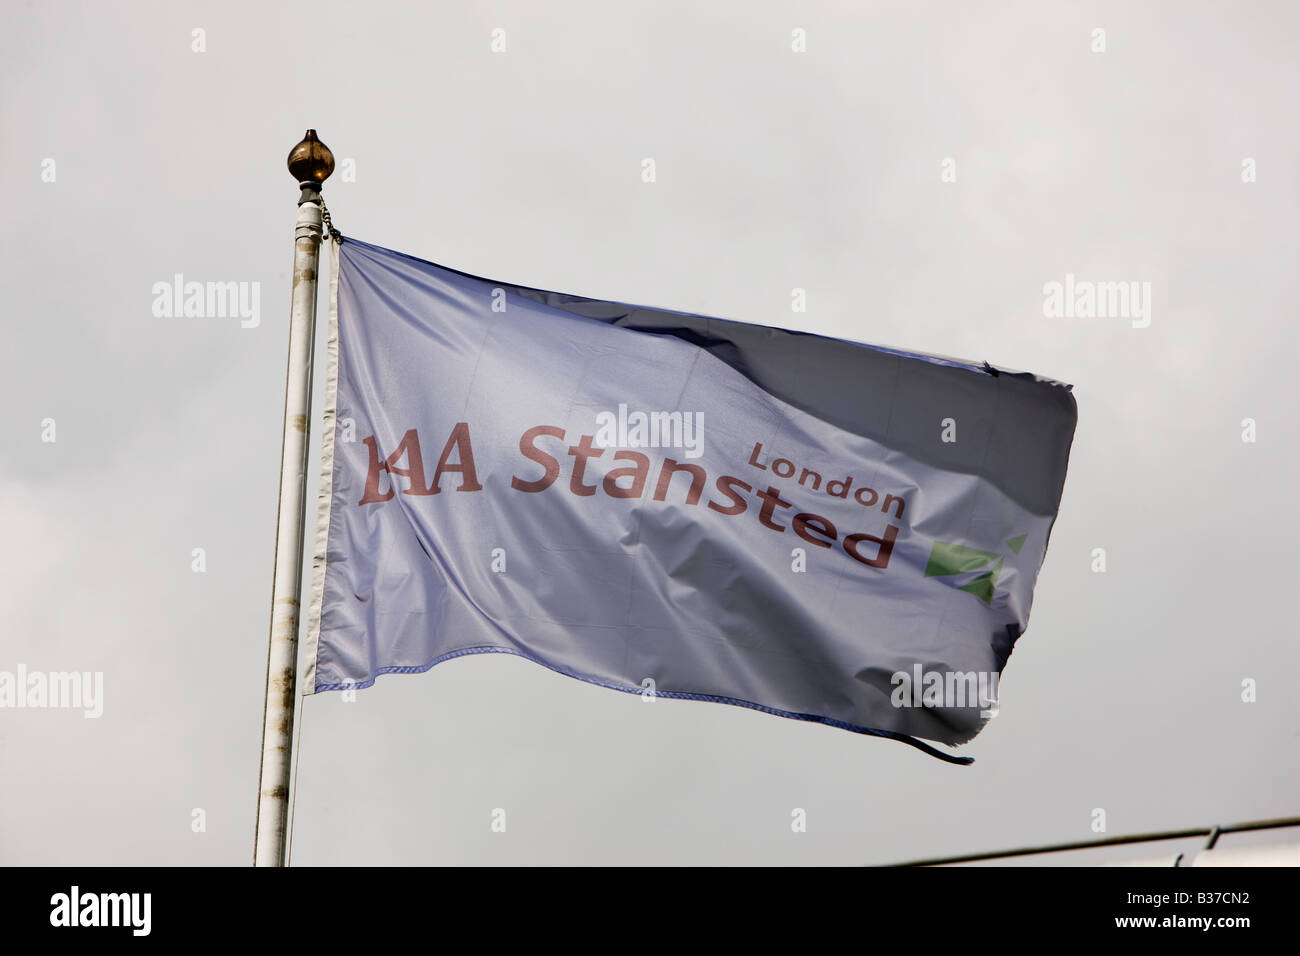 BAA Stansted Flagge am Flughafen London Stansted in Essex UK betrieben von BAA der British Airport Authority Stockfoto